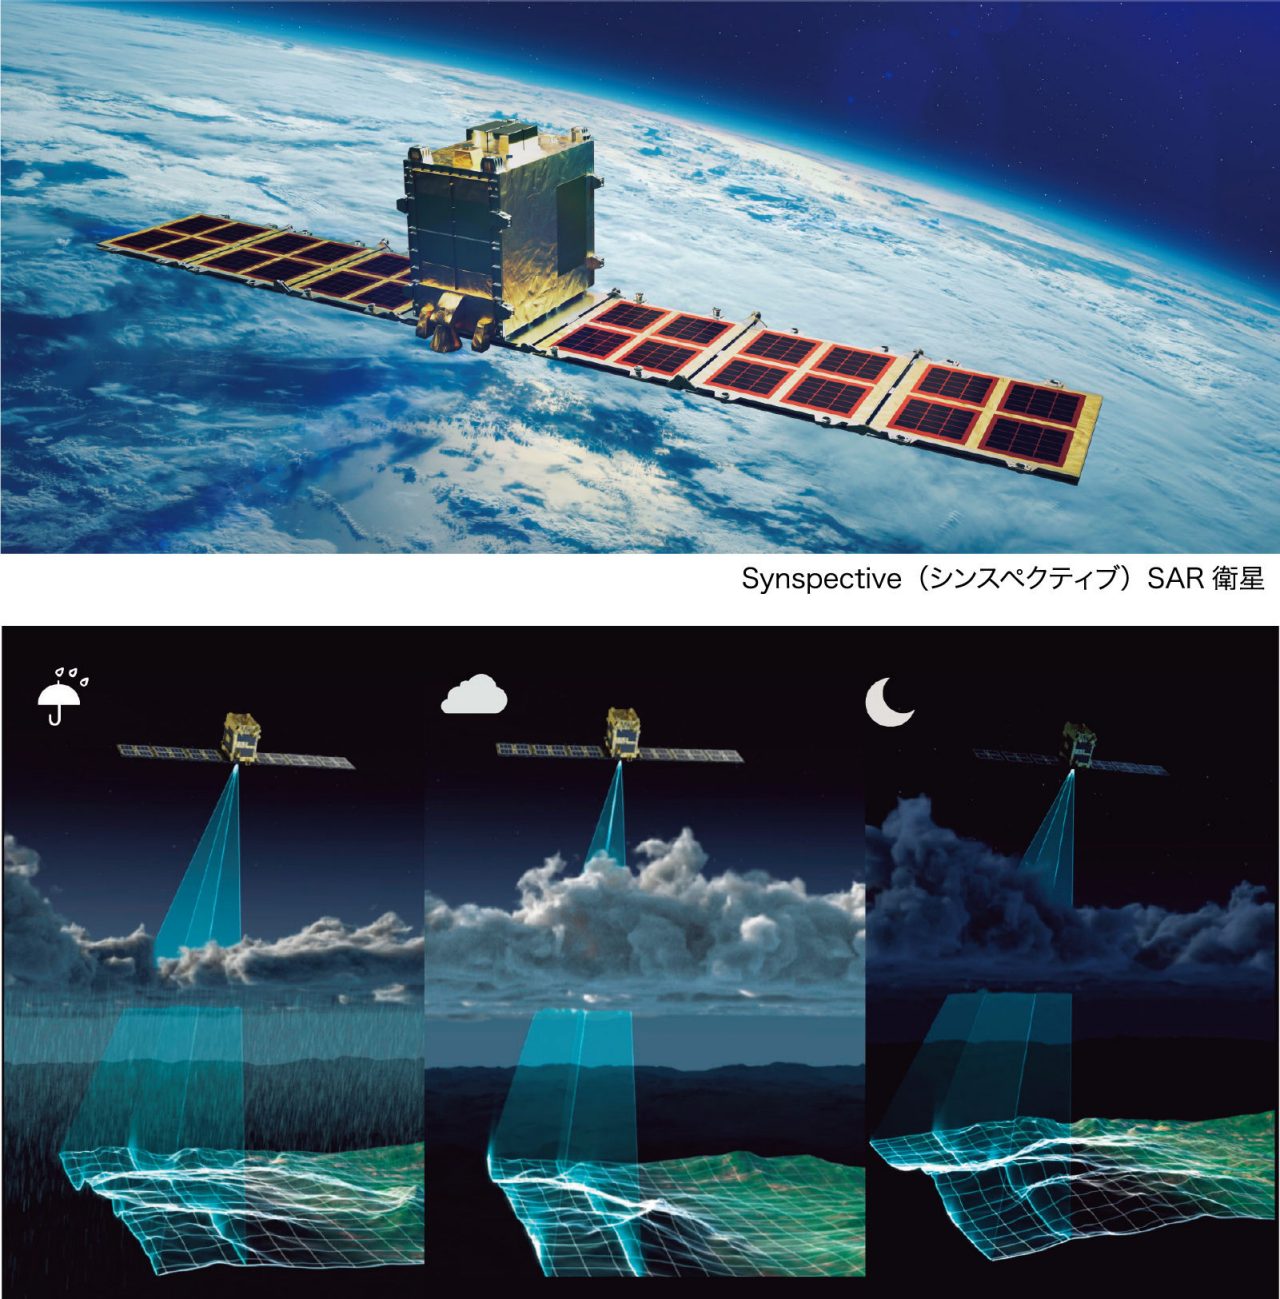 SAR衛星による観測は夜間、雲があってもデータ取得が可能